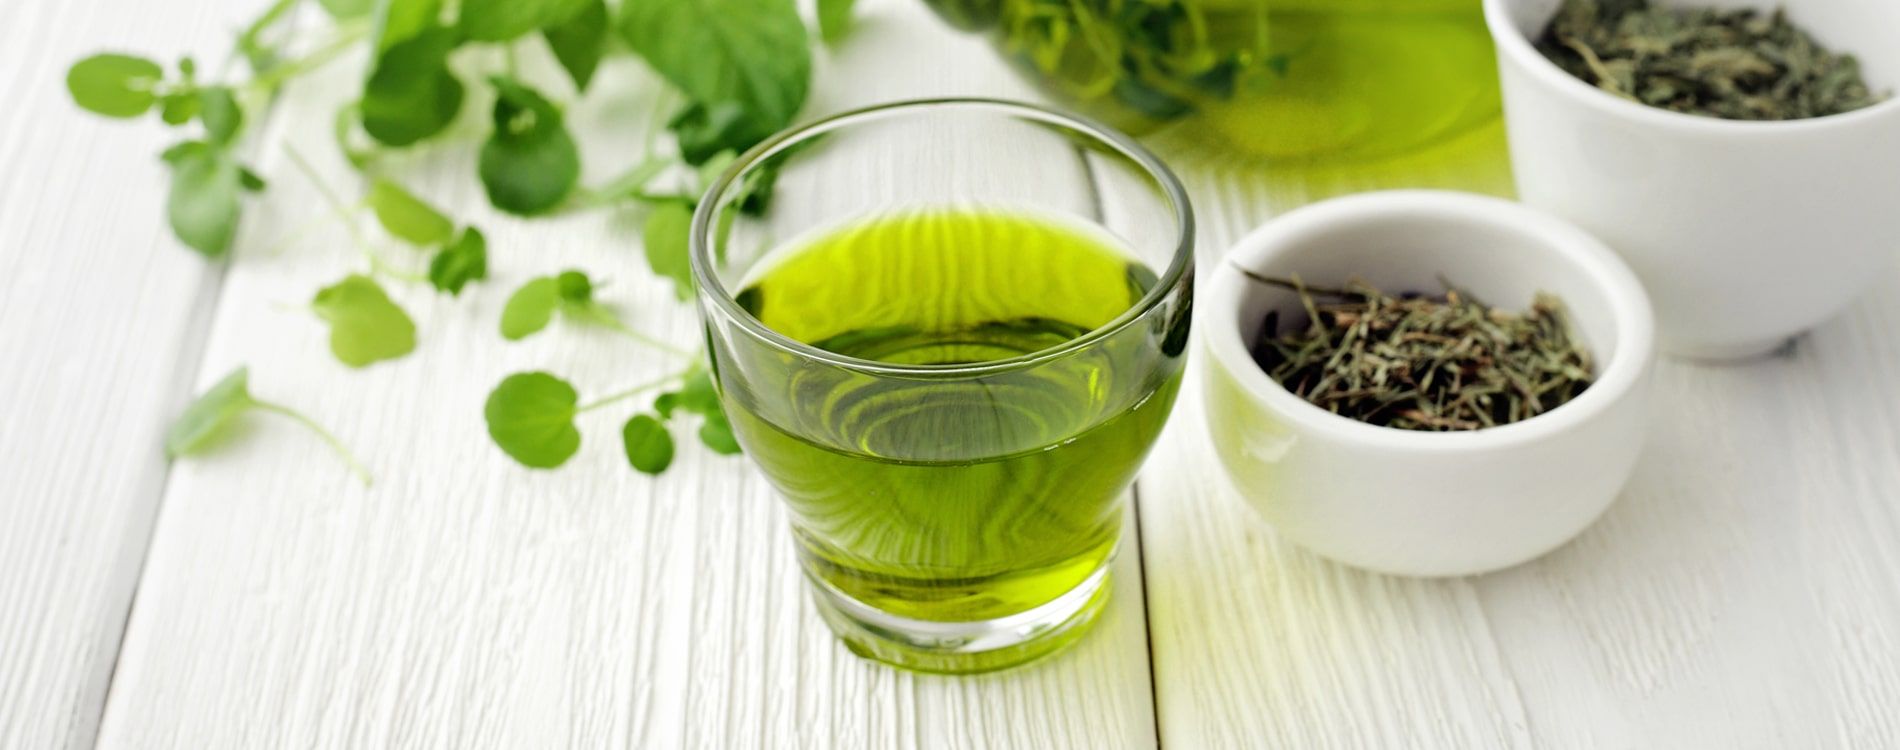 Zielona herbata - właściwości zdrowotne i jej zastosowanie w diecie